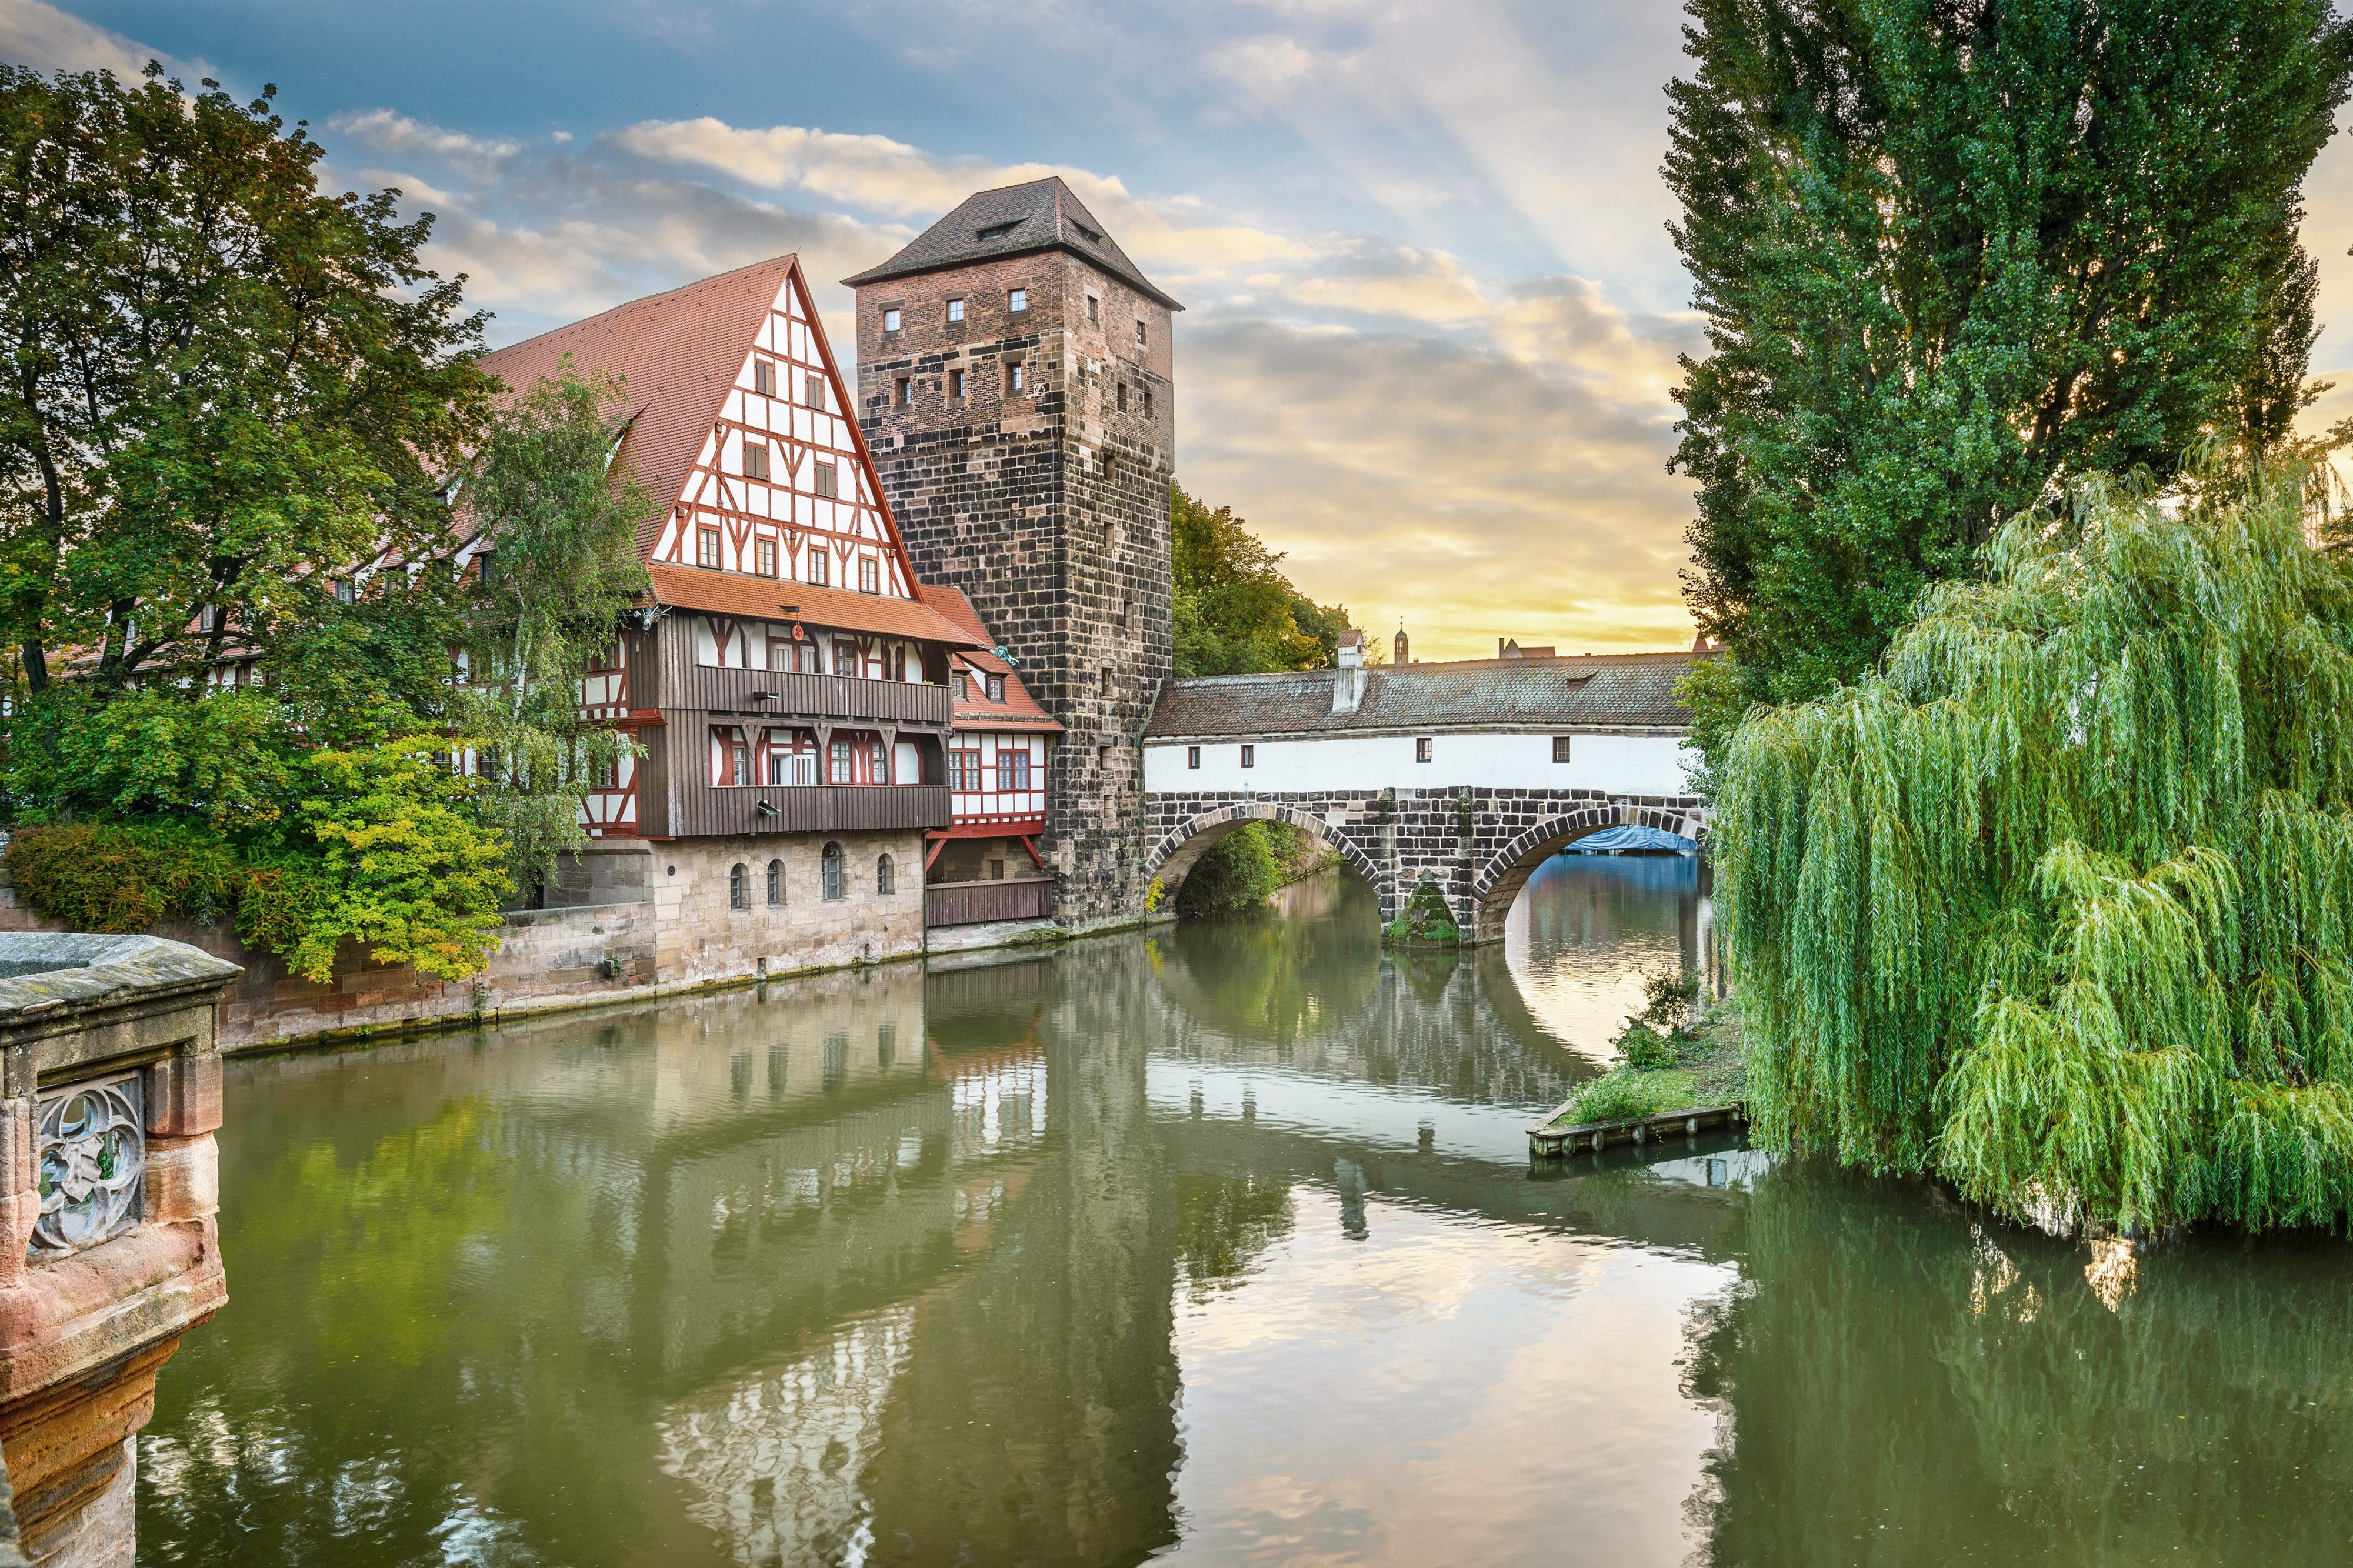 Henker haus and Henkersteg bridge over Pegnitz river in Nuremberg